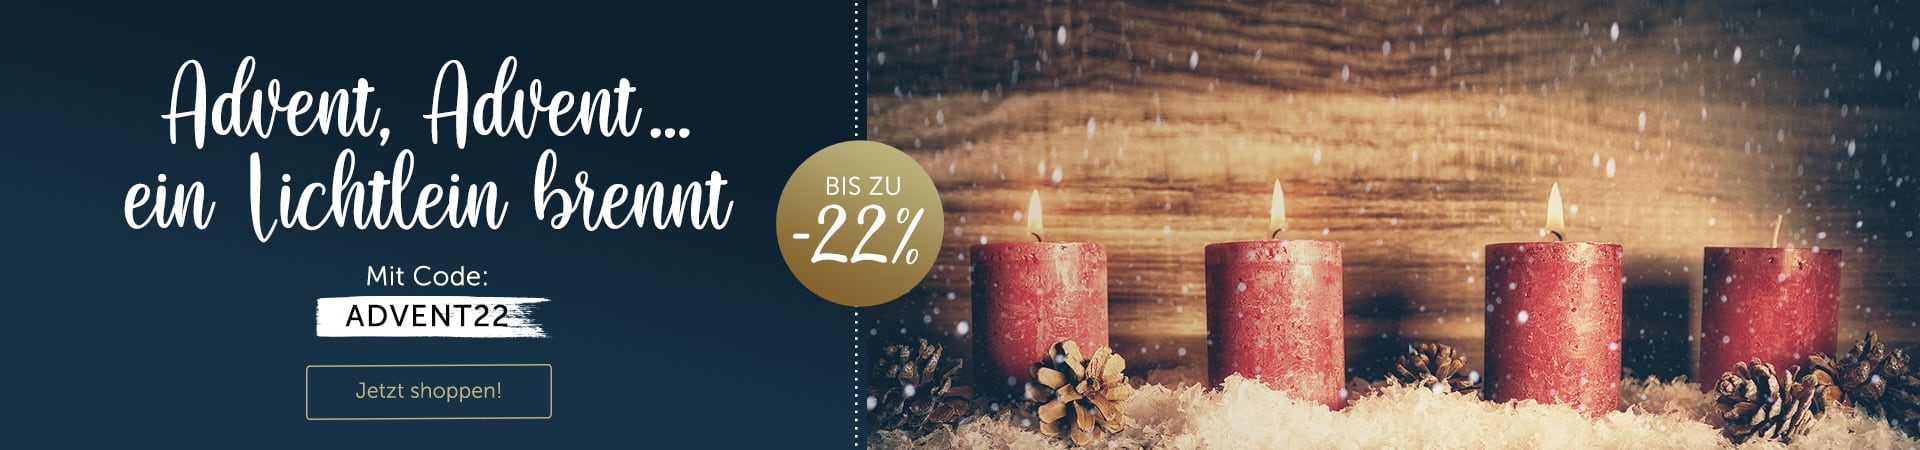 Advent, Advent … ein Lichtlein brennt. Hol dir jetzt bis zu 22% Rabatt auf Alles zum 3ten Advent.